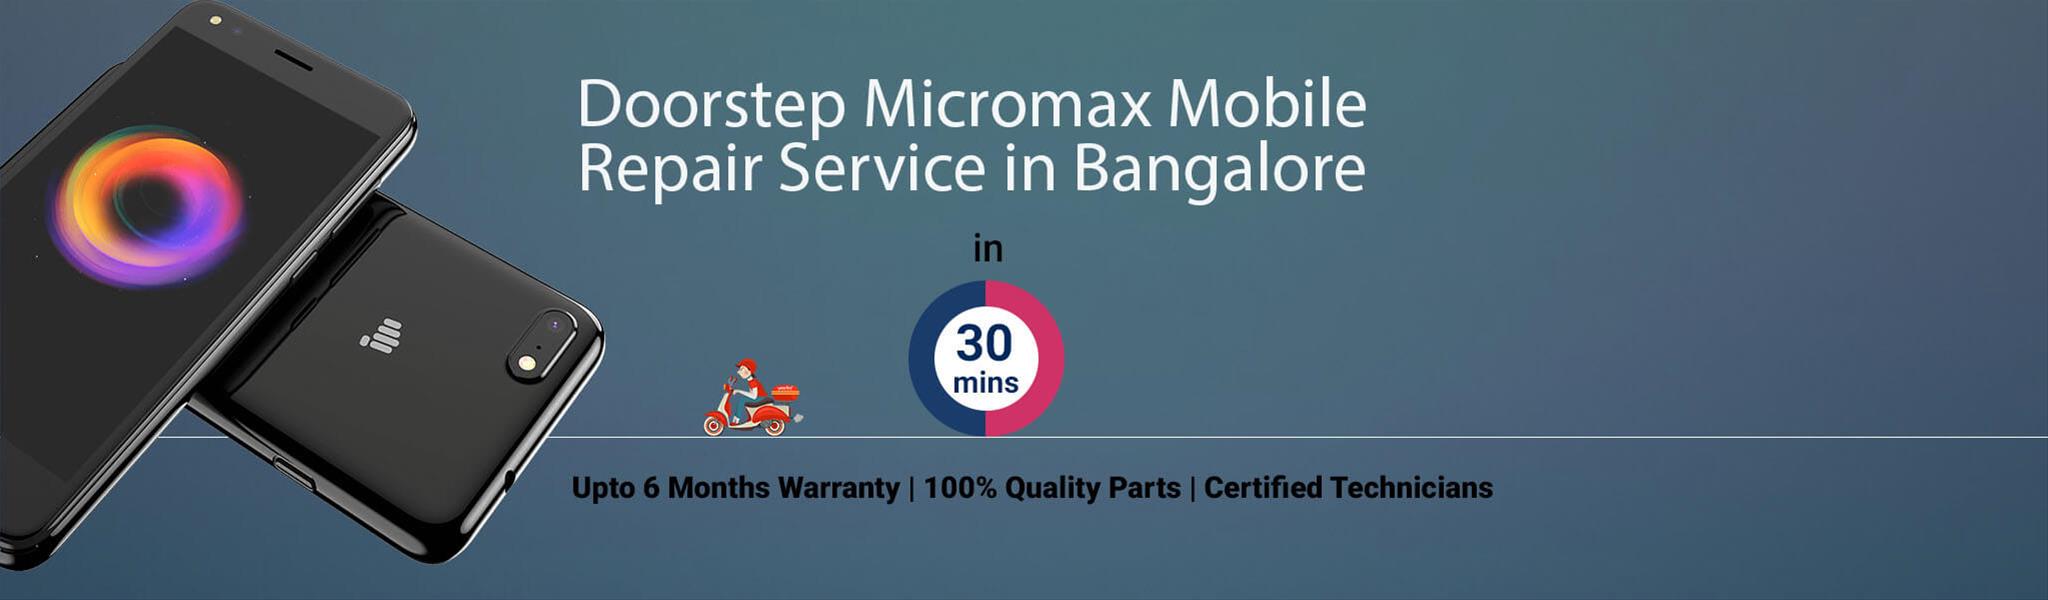 micromax-repair-service-banner-bangalore.jpg